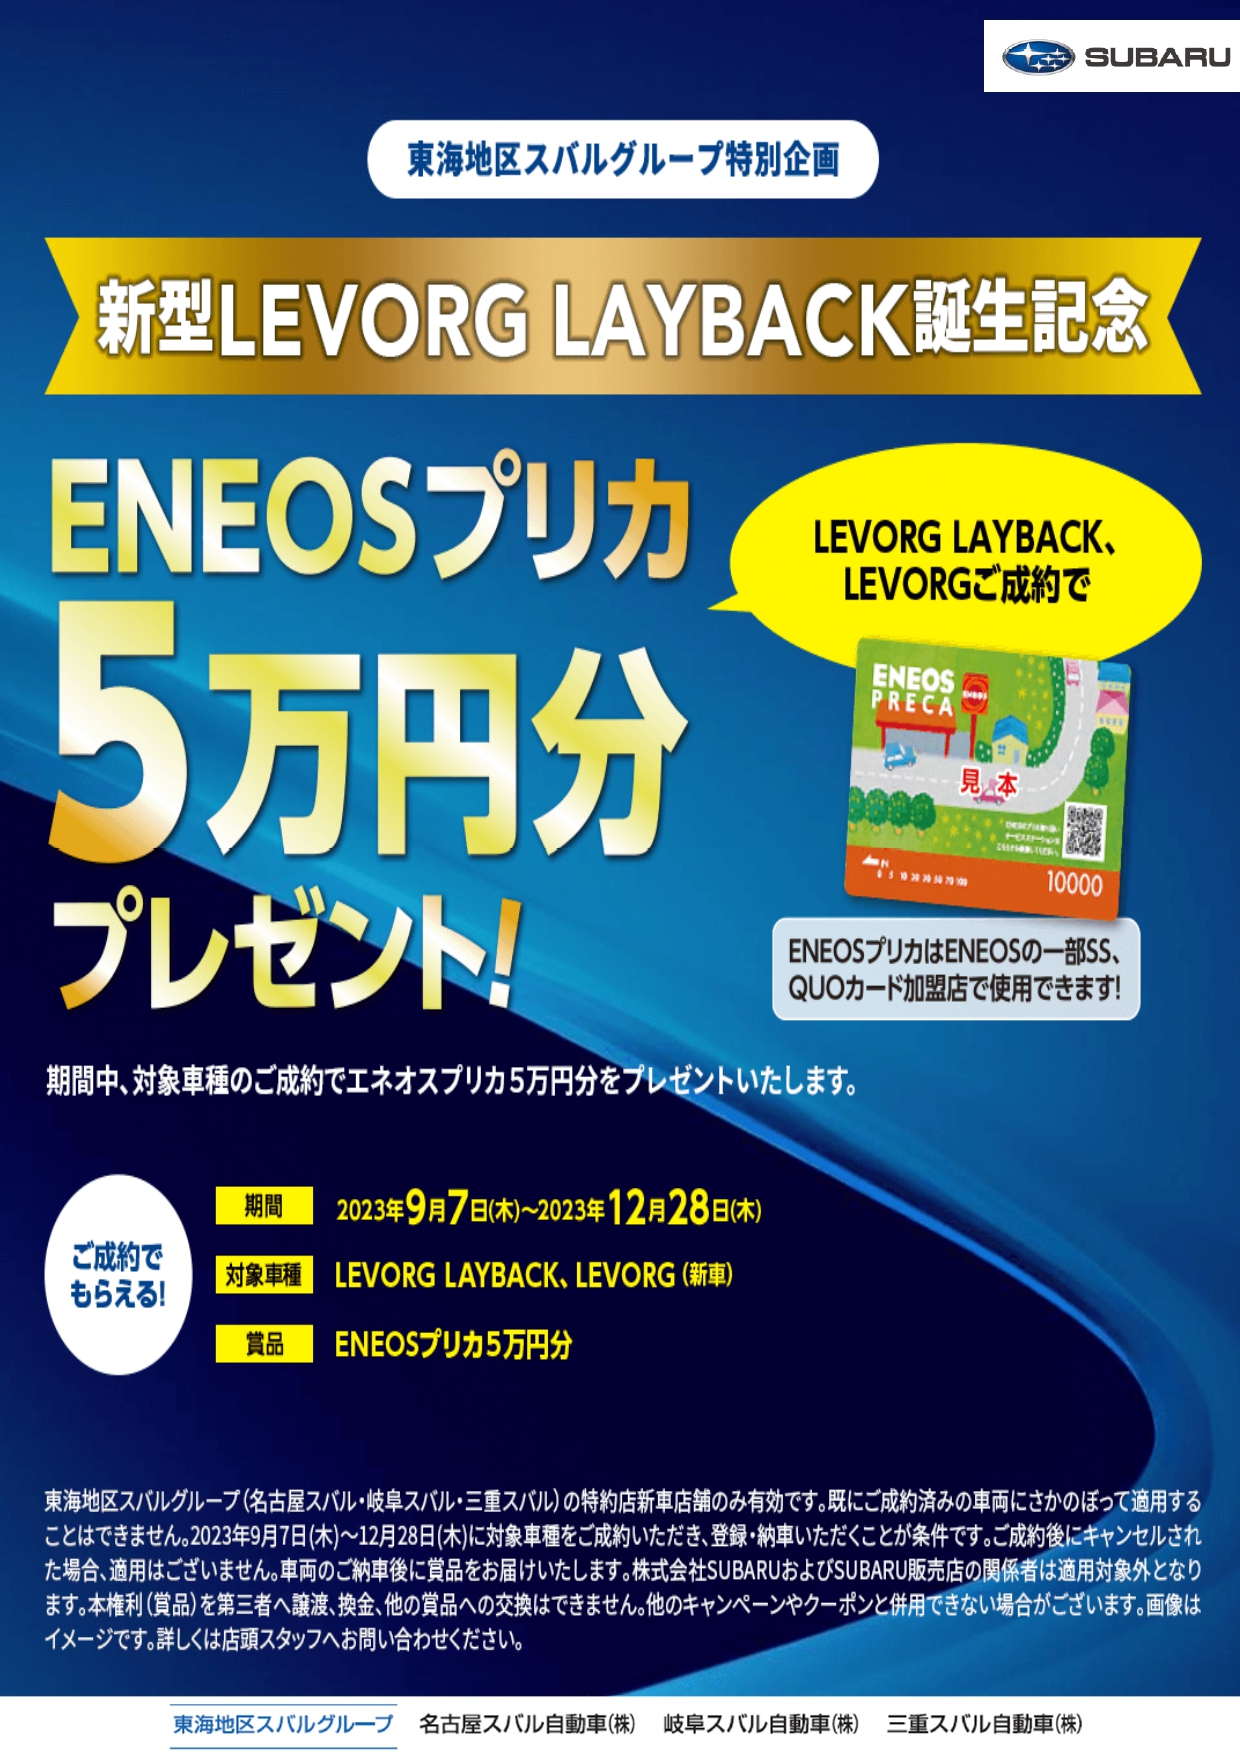 新型LEVORG LAYBACK誕生記念 ENEOSプリカ5万円分プレゼント